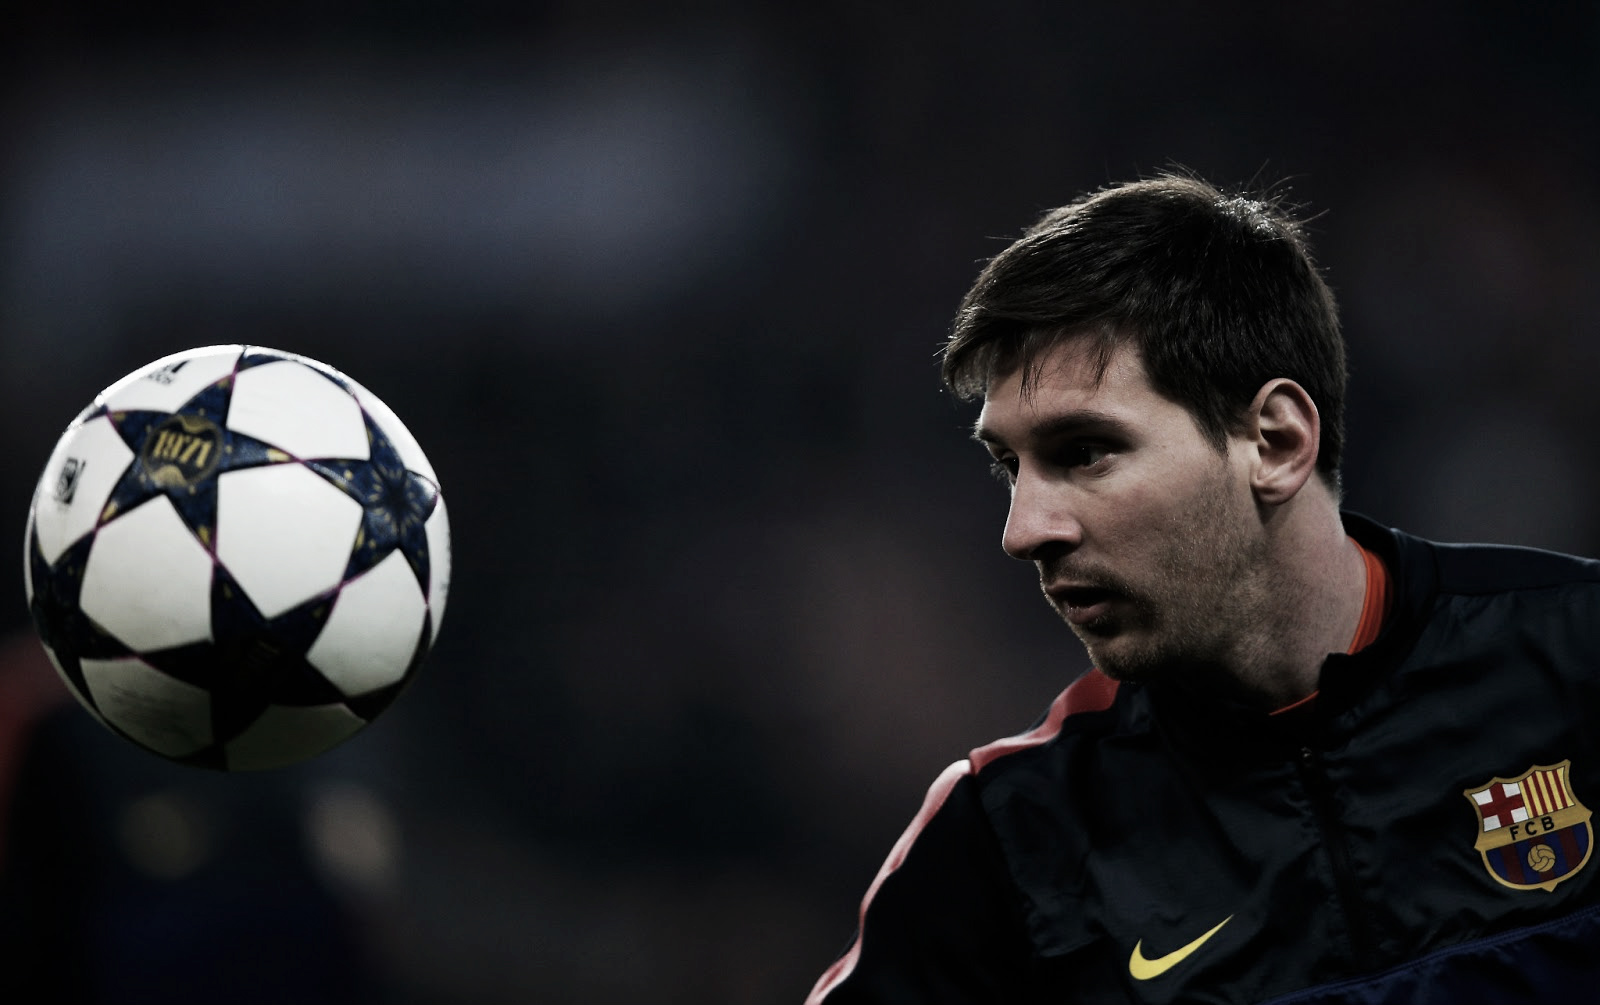 Messi, nominado a mejor jugador de la UEFA 2012/13